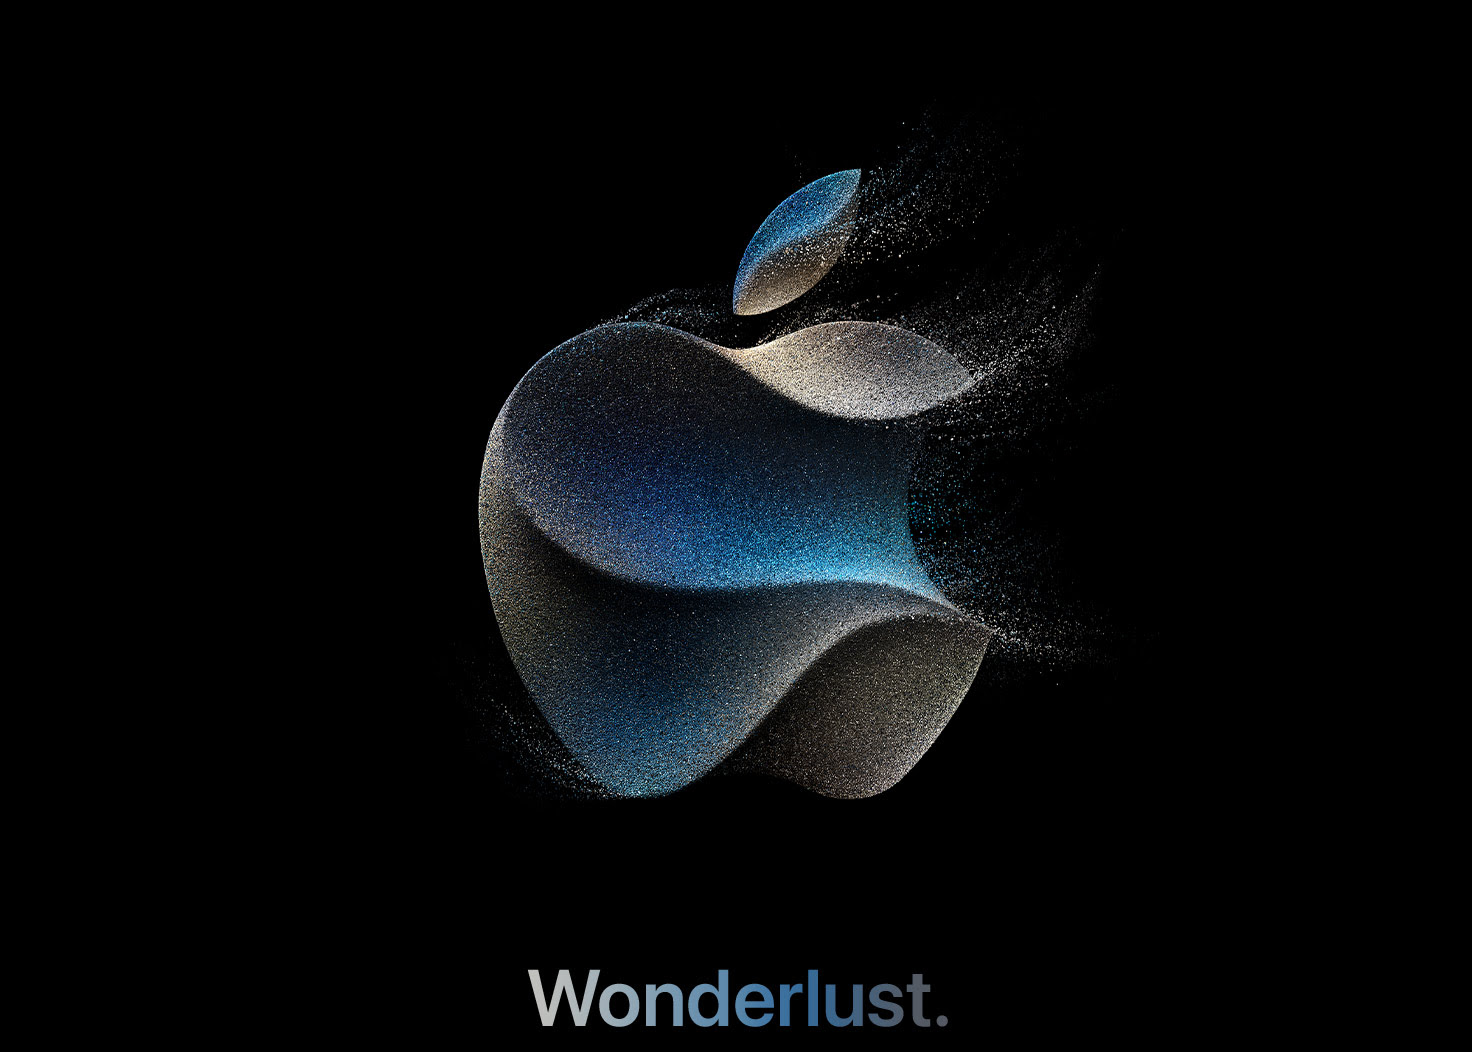 Apple event: Wonderlust